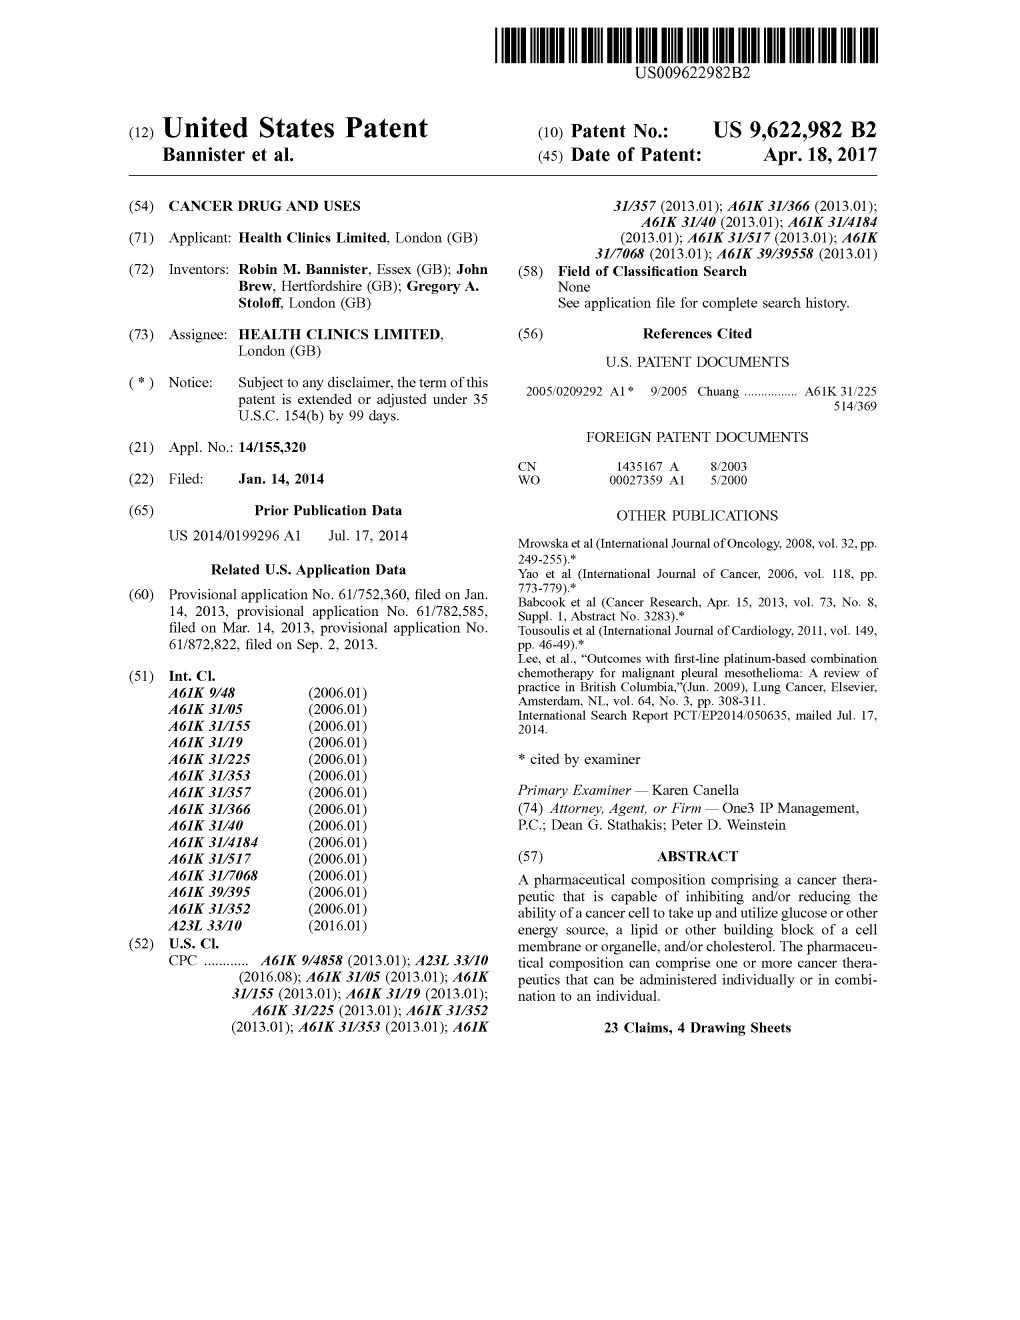 (12) United States Patent (10) Patent No.: US 9,622,982 B2 Bannister Et Al